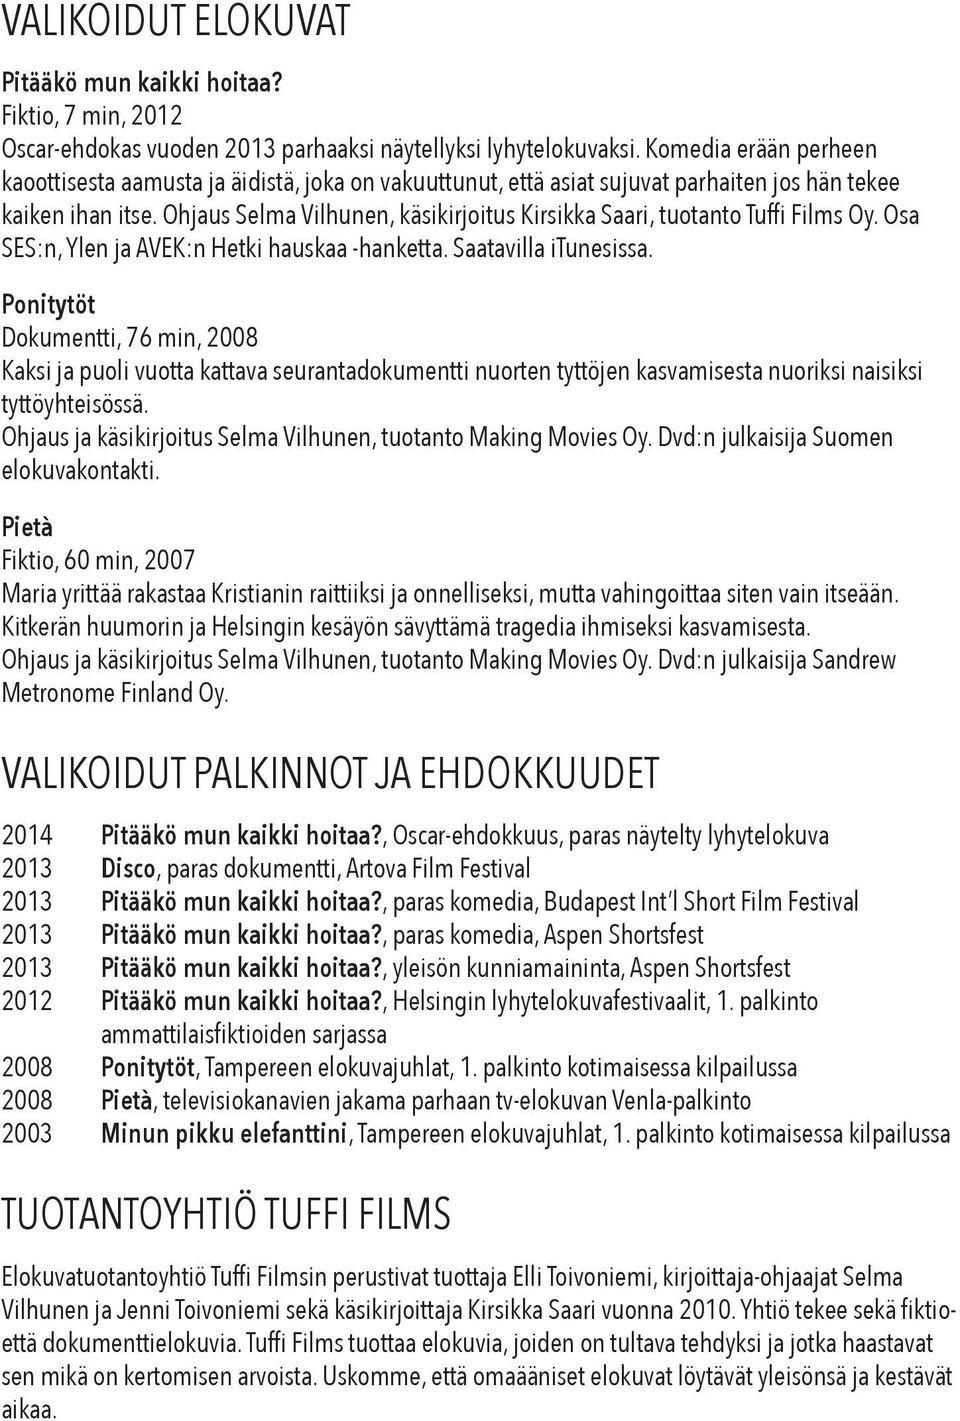 Ohjaus Selma Vilhunen, käsikirjoitus Kirsikka Saari, tuotanto Tuffi Films Oy. Osa SES:n, Ylen ja AVEK:n Hetki hauskaa -hanketta. Saatavilla itunesissa.